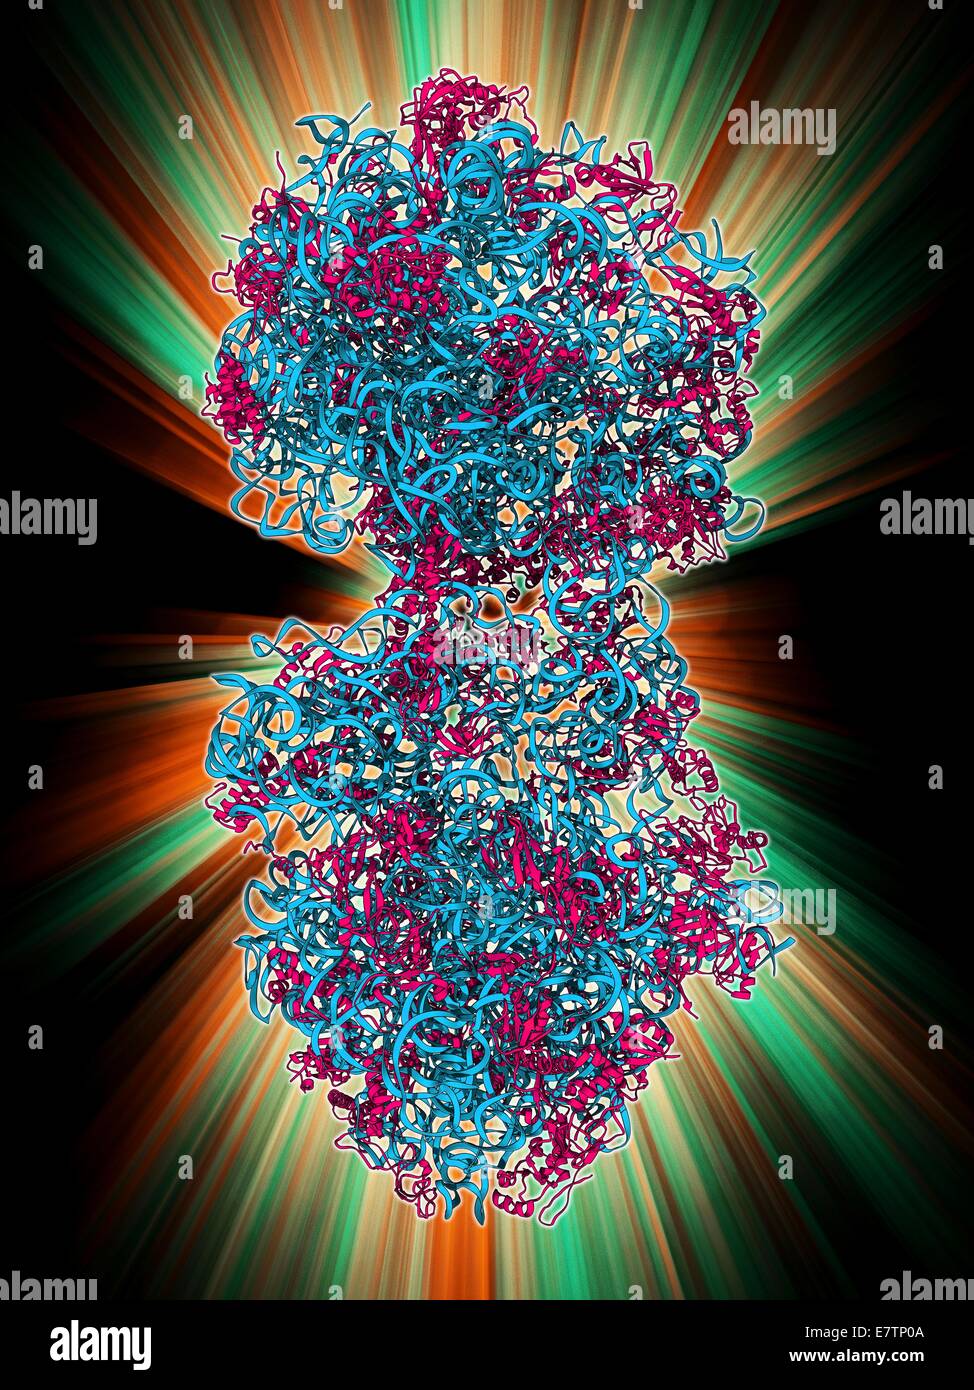 70S ribosoma, modelo molecular. Los ribosomas están compuestos de proteínas y ácido ribonucleico (ARN). En bacterias cada ribosoma consta de una pequeña subunidad (30S) y una gran subunidad (50S). Son el lugar de la traducción, el proceso de síntesis de proteínas. Foto de stock